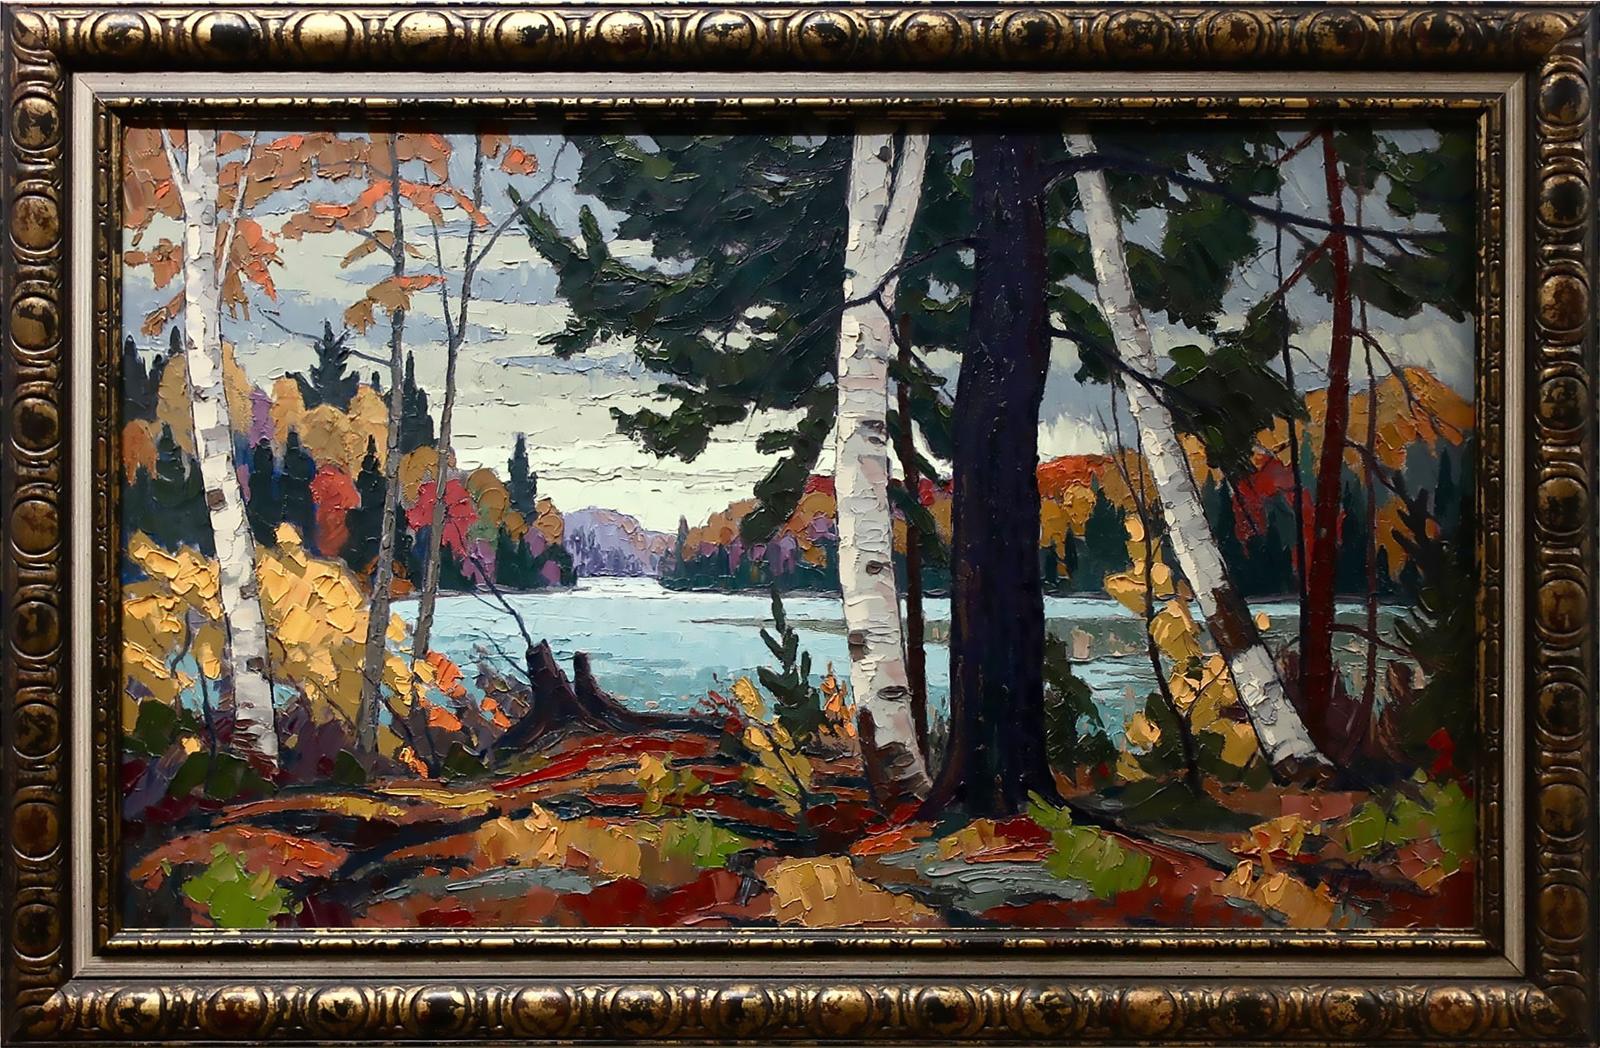 William (Bill) Parsons (1909-1982) - Untitled (Lake Thru Birches)